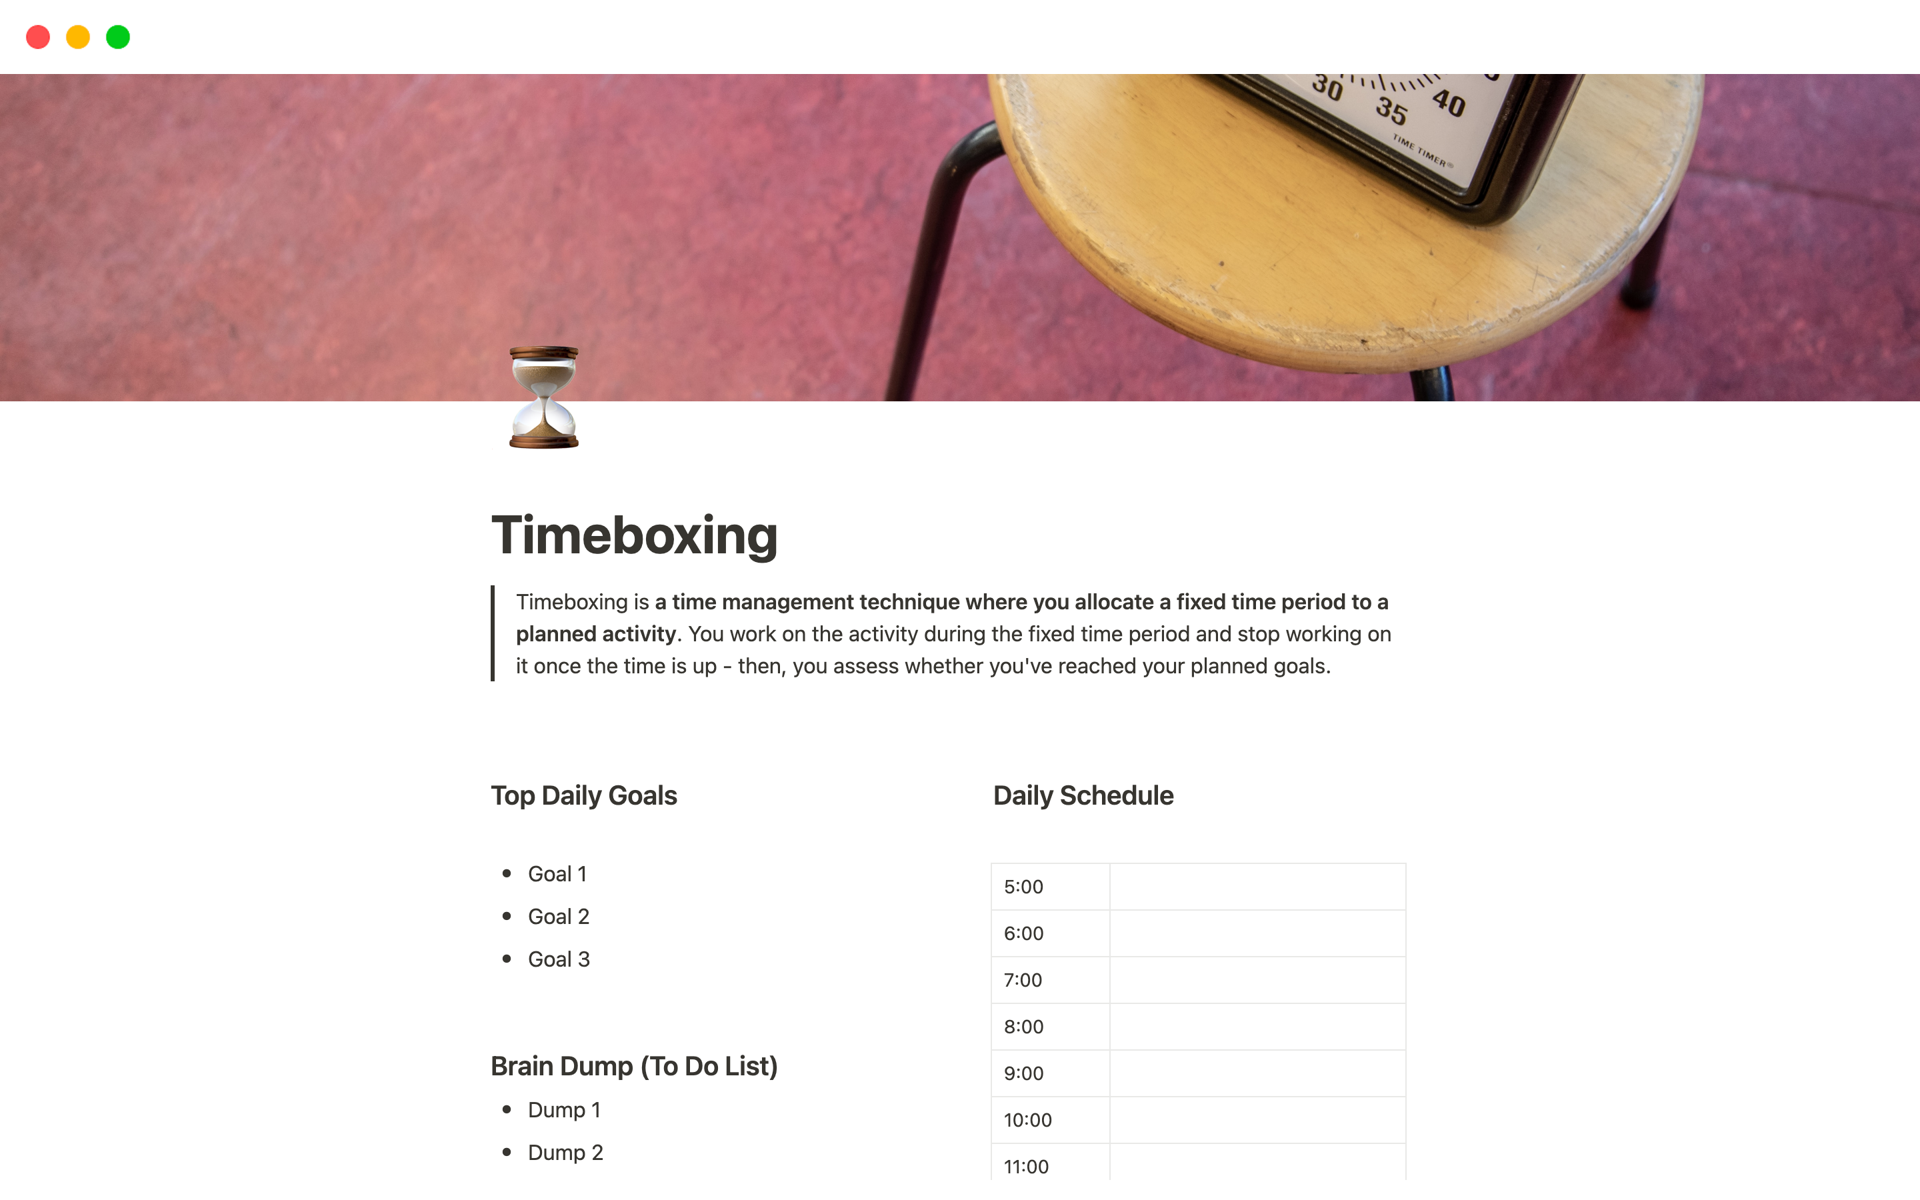 Vista previa de una plantilla para Timeboxing